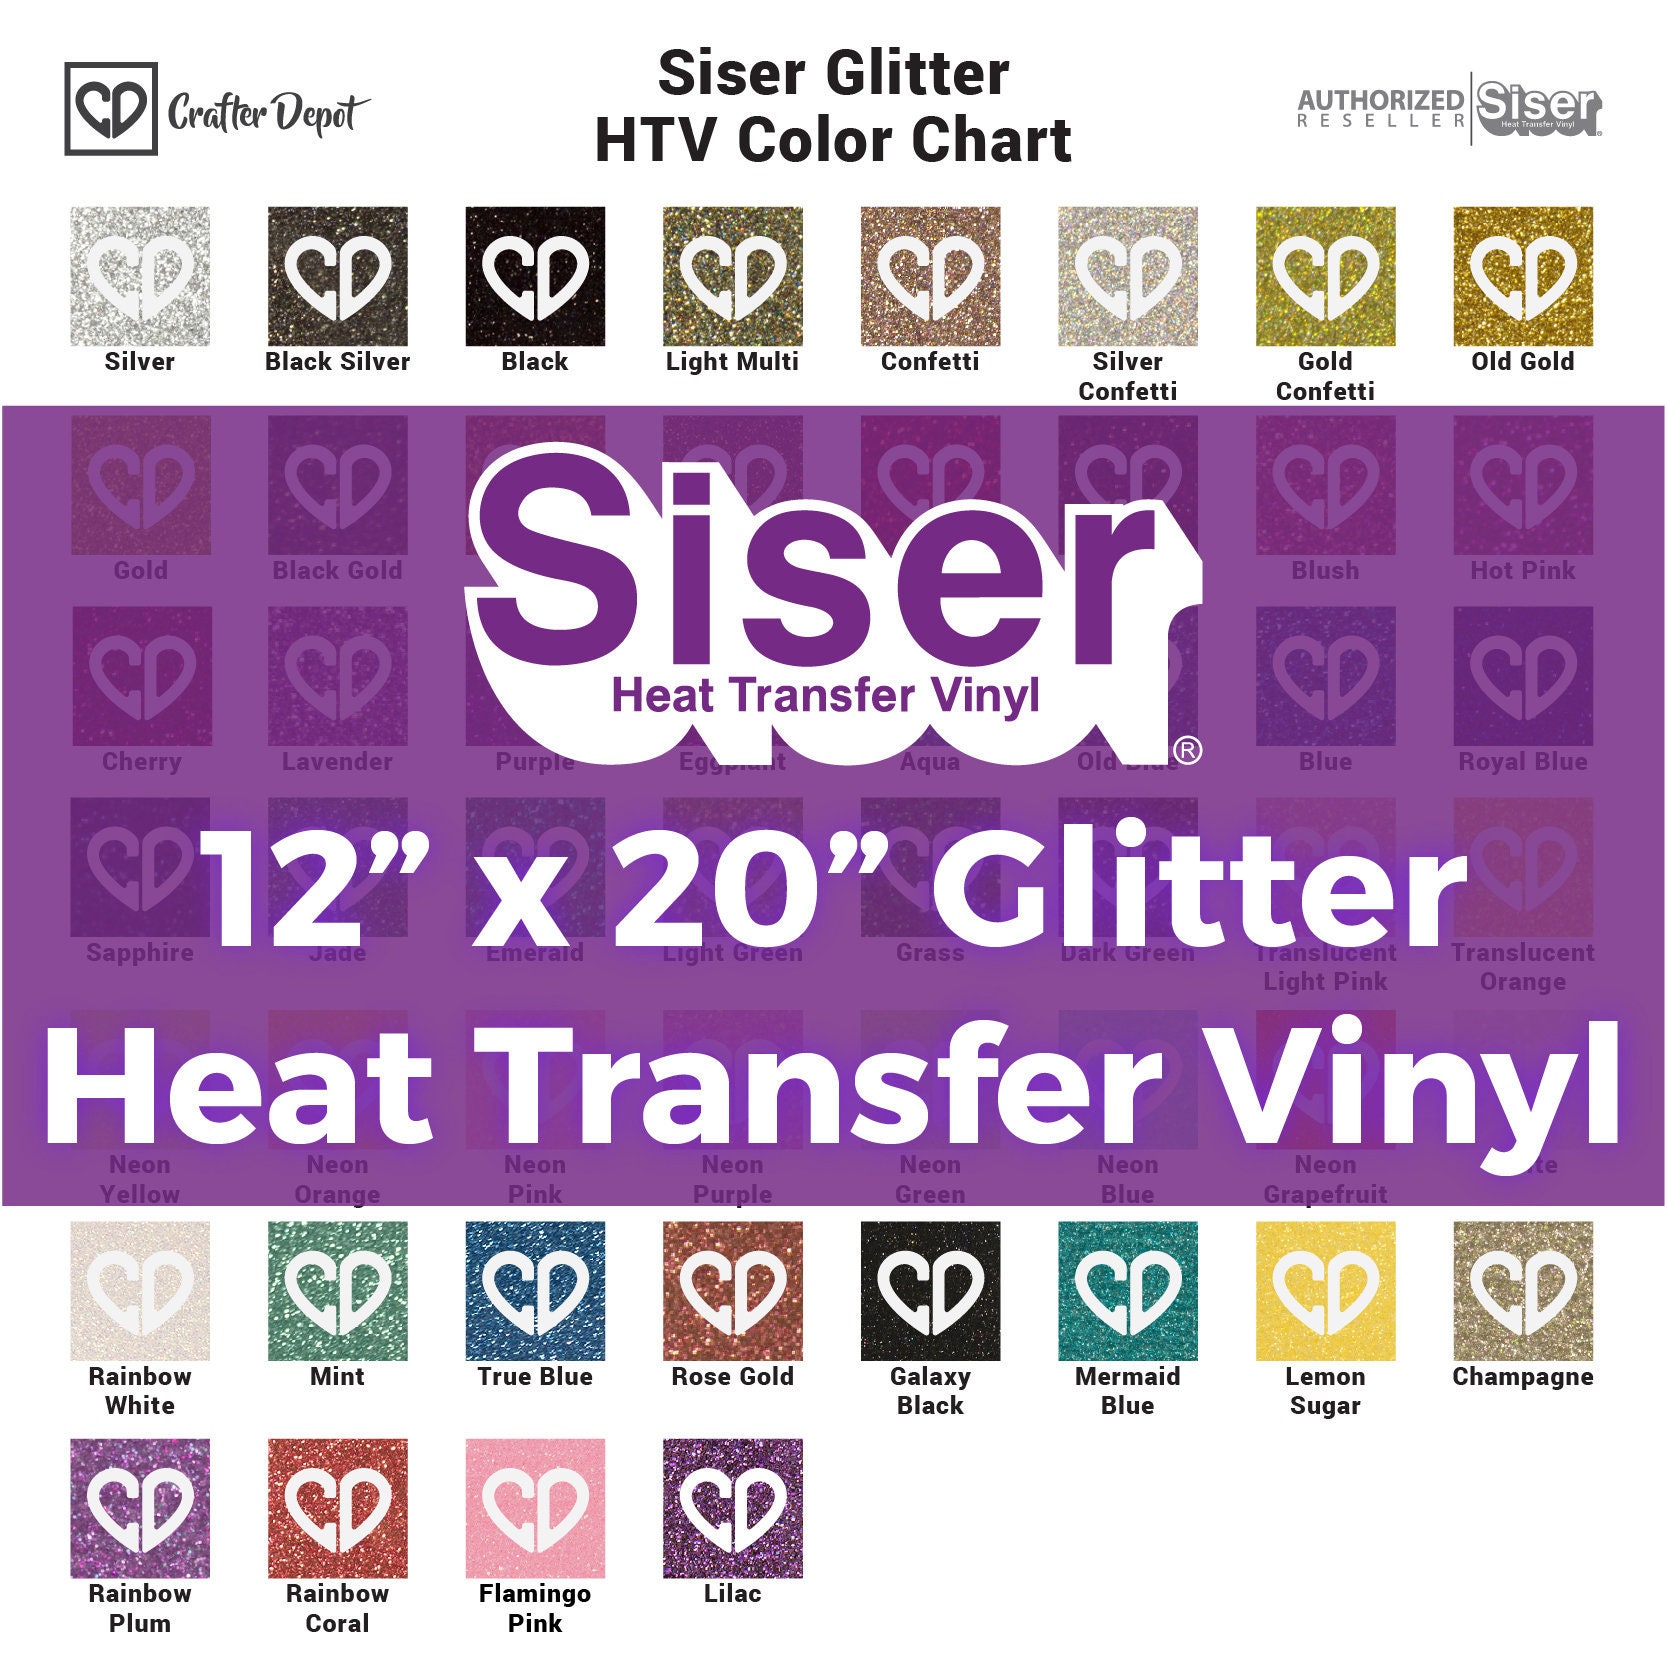 Siser Glitter Rainbow White - 12x12 Sheet